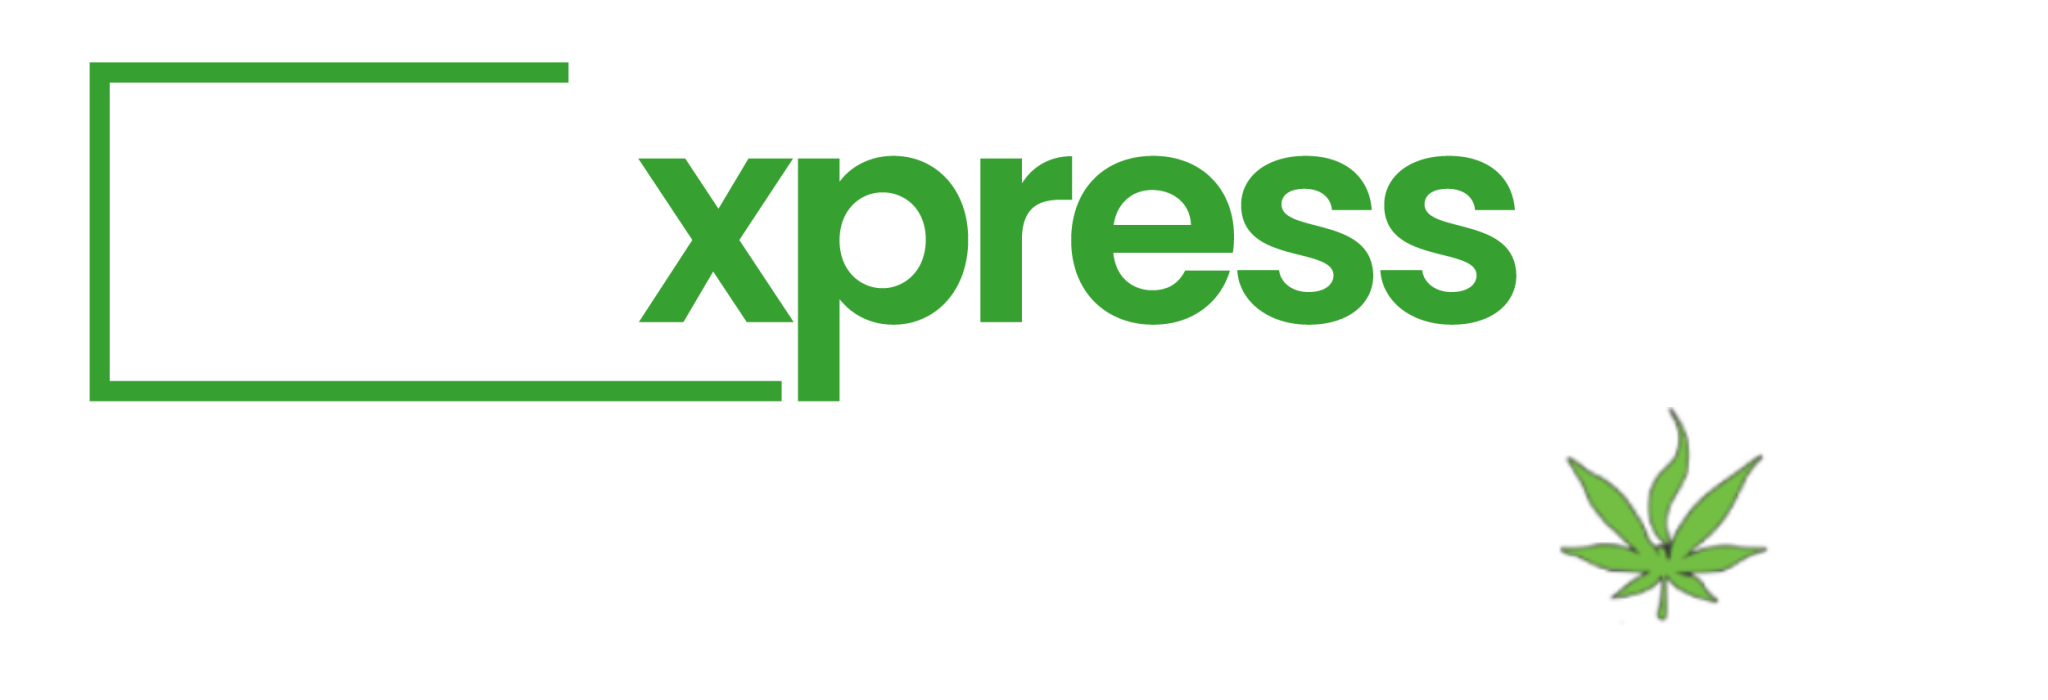 BUDXPRESS.ca